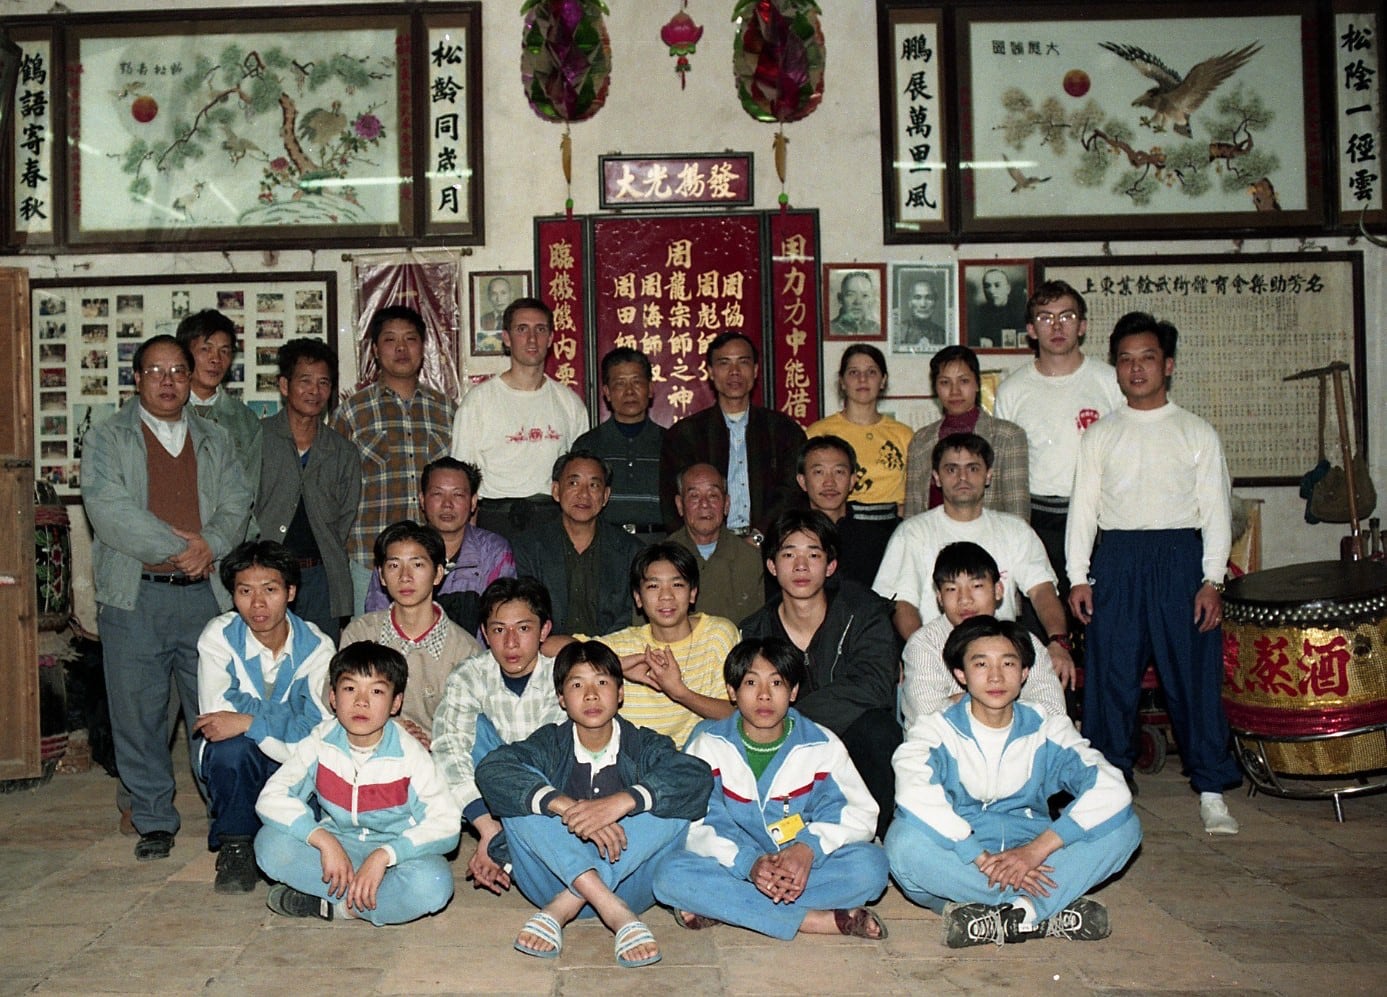 Ein Gruppenbild mit Mitgliedern der Jiujiang Ying Yong Tang Schule